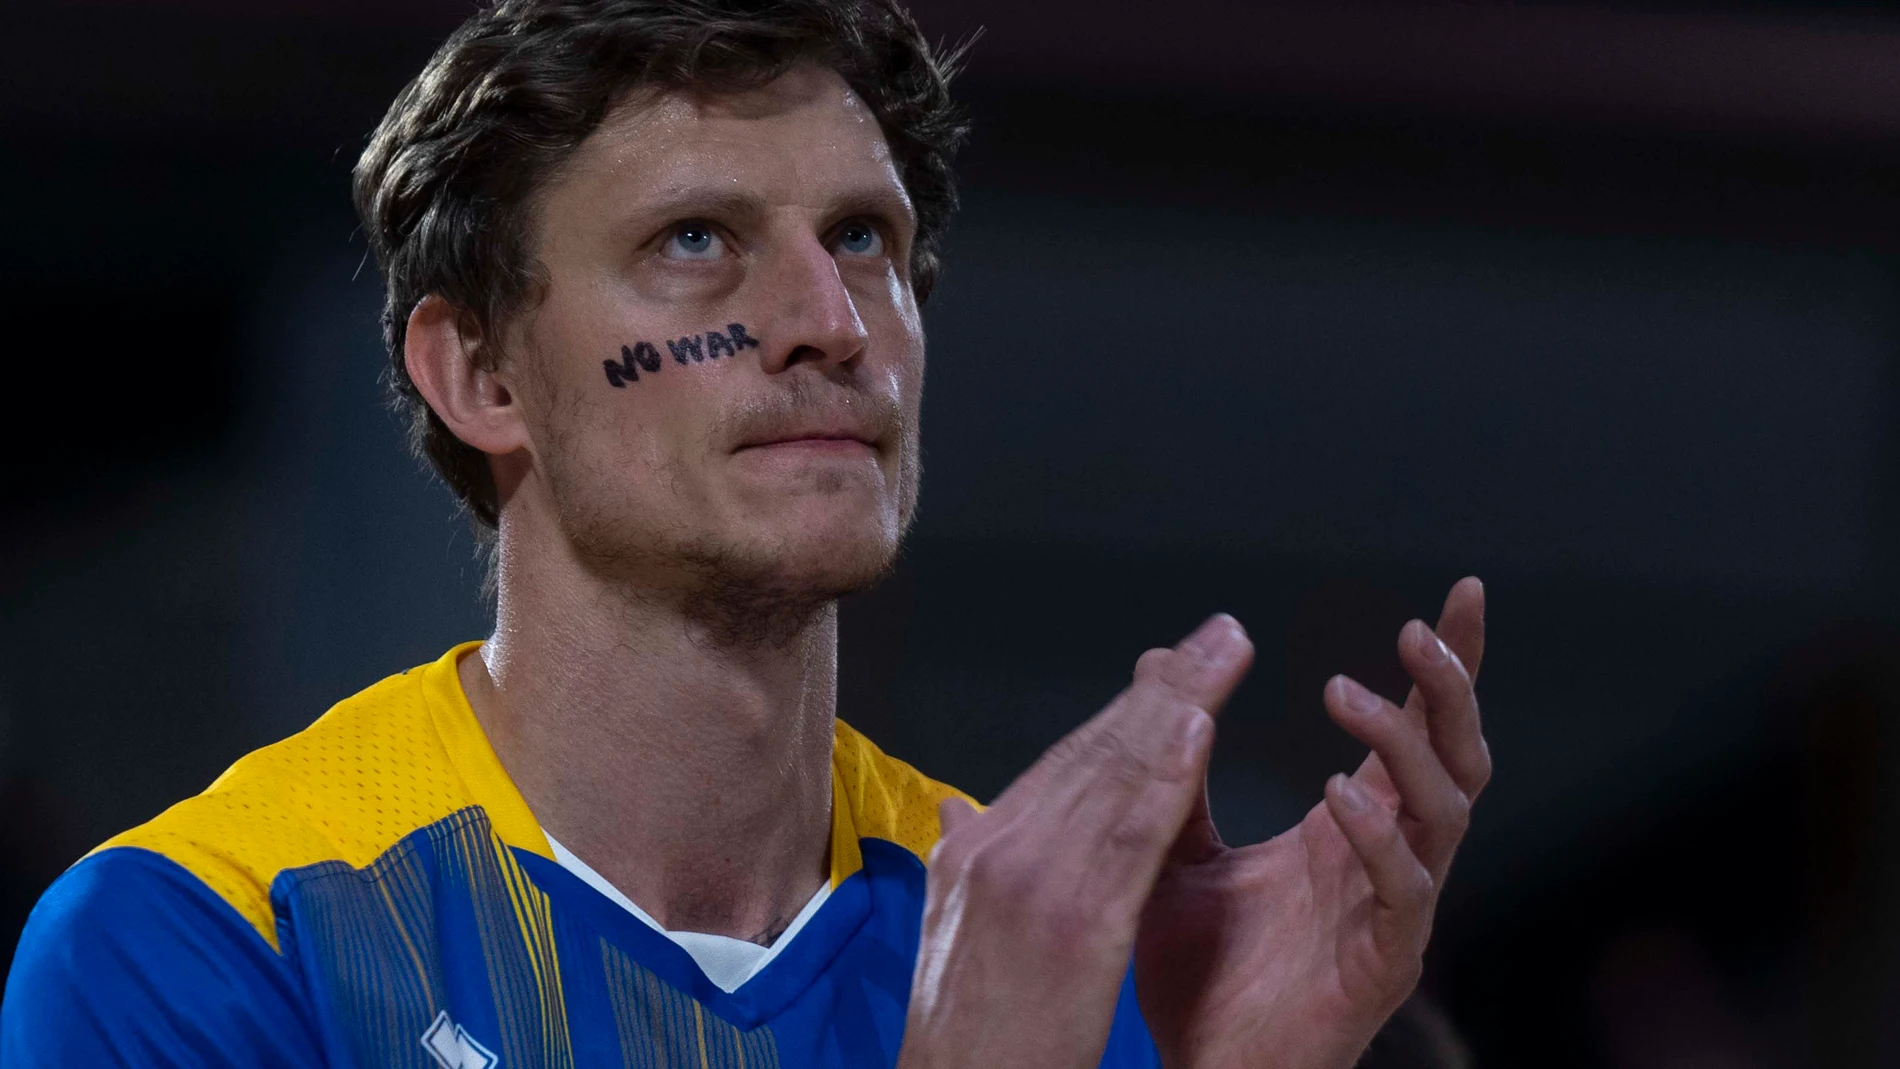 El pívot de la selección ucraniana de baloncesto Artem Pustovyi, con el "No war" escrito en su rostro